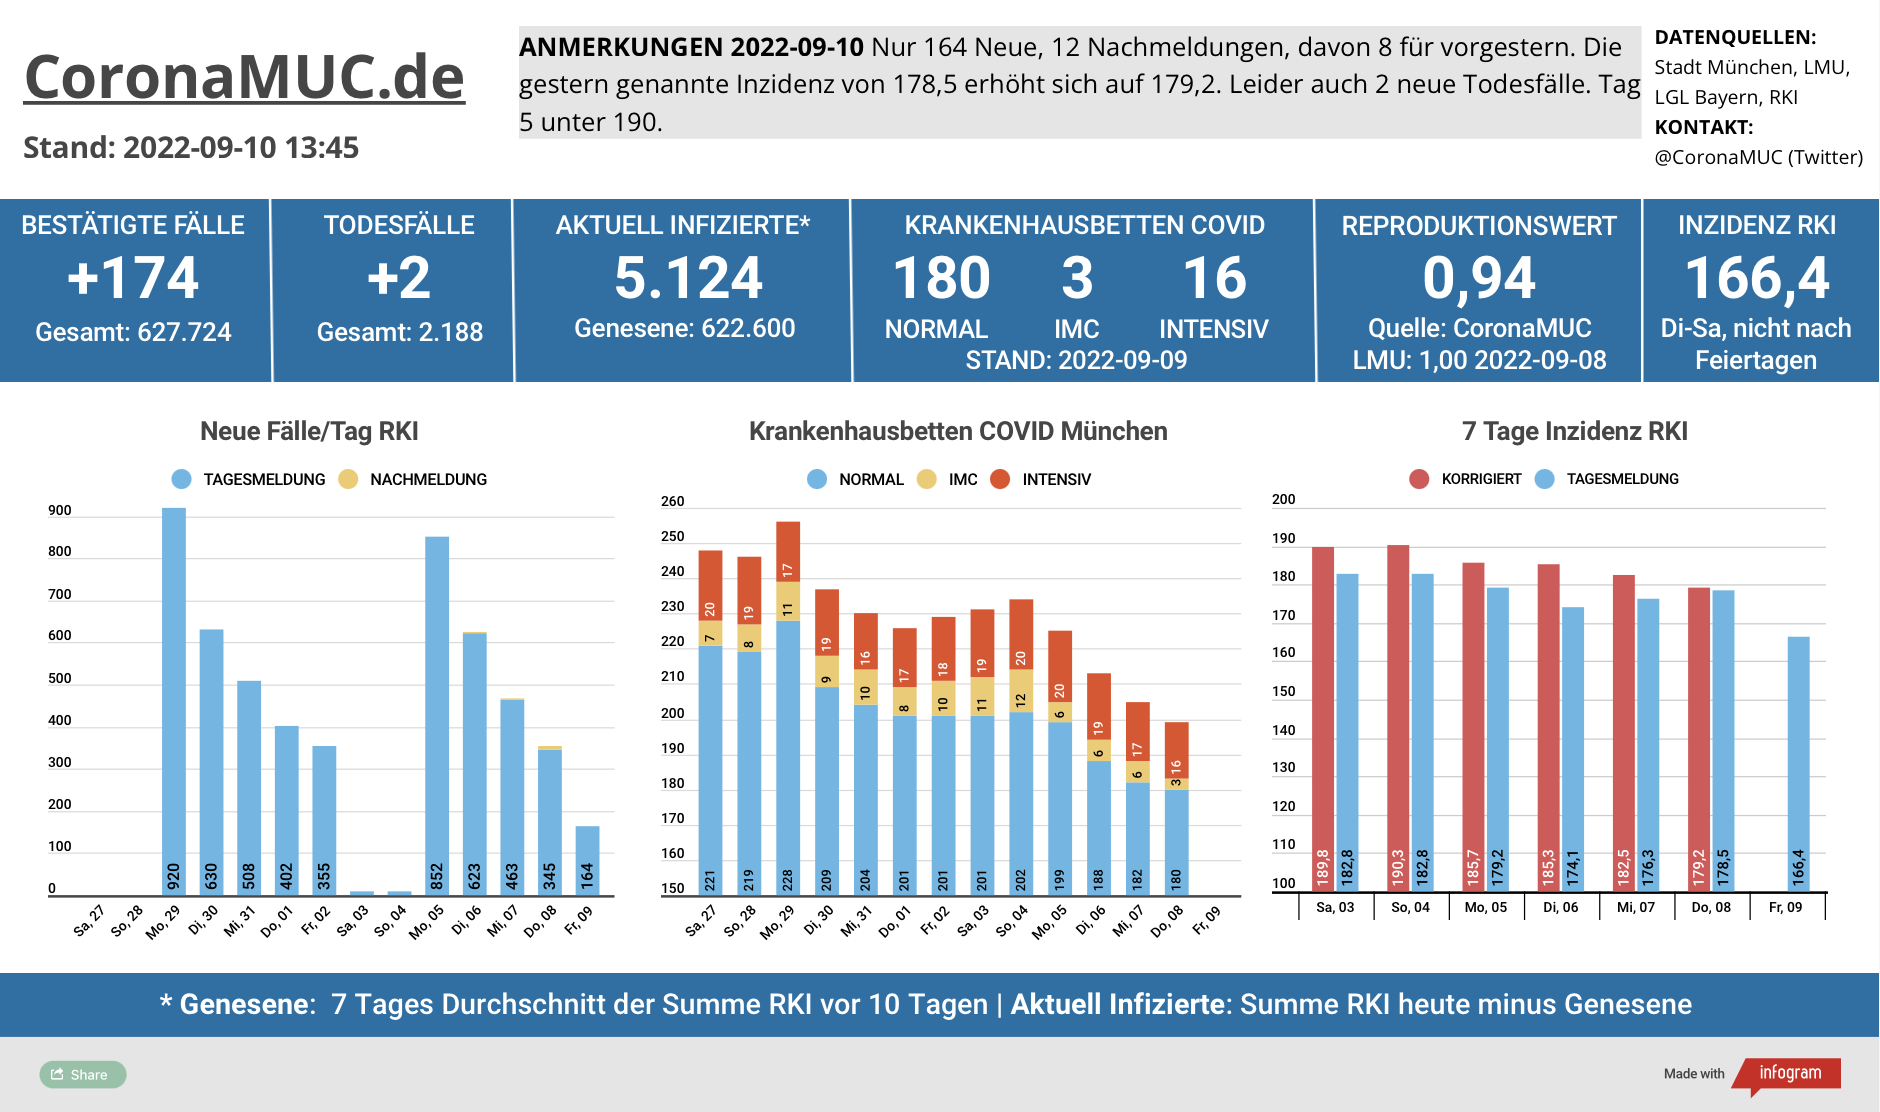 2022-09-10 Dashboard mit den Zahlen für München. Drei Balkengrafiken. Erste zeigt Neu- und Nachmeldungen, im Vergleich zur Vorwoche weniger. Zweite zeigt Krankenbetten, deutlich sinkend, aber keine neuen Zahlen am Samstag, dritte zeigt Inzidenz, die jetzt seit 5 Tagen unter 190 ist.